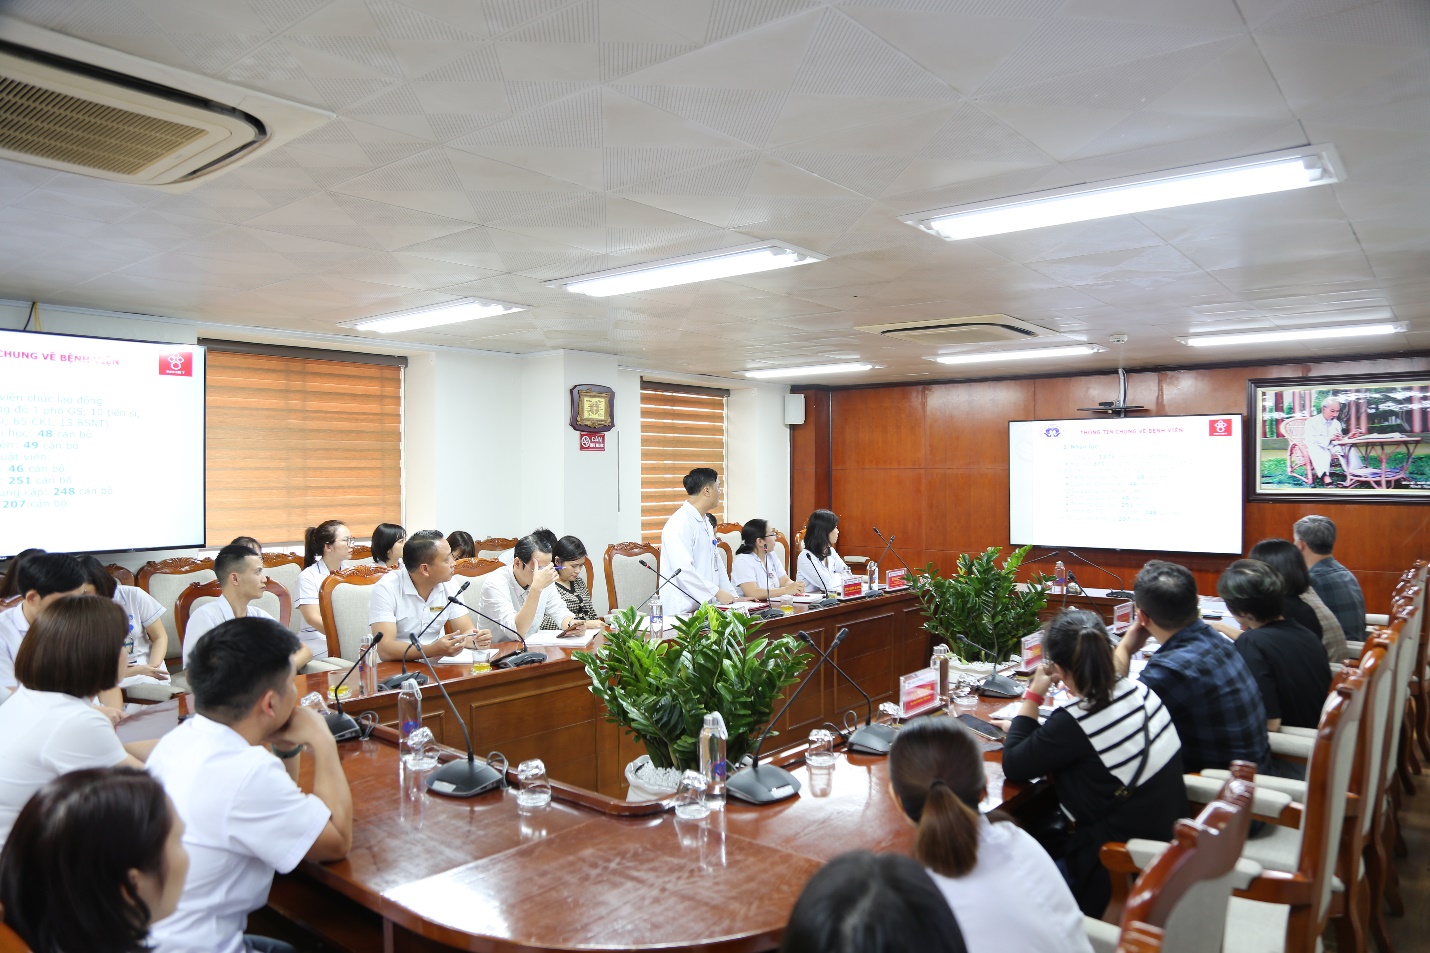 Đại diện Trung tâm Huyết học – Truyền máu, Bệnh viện đa khoa tỉnh Phú Thọ trình bày báo cáo hoạt động trong những năm qua.